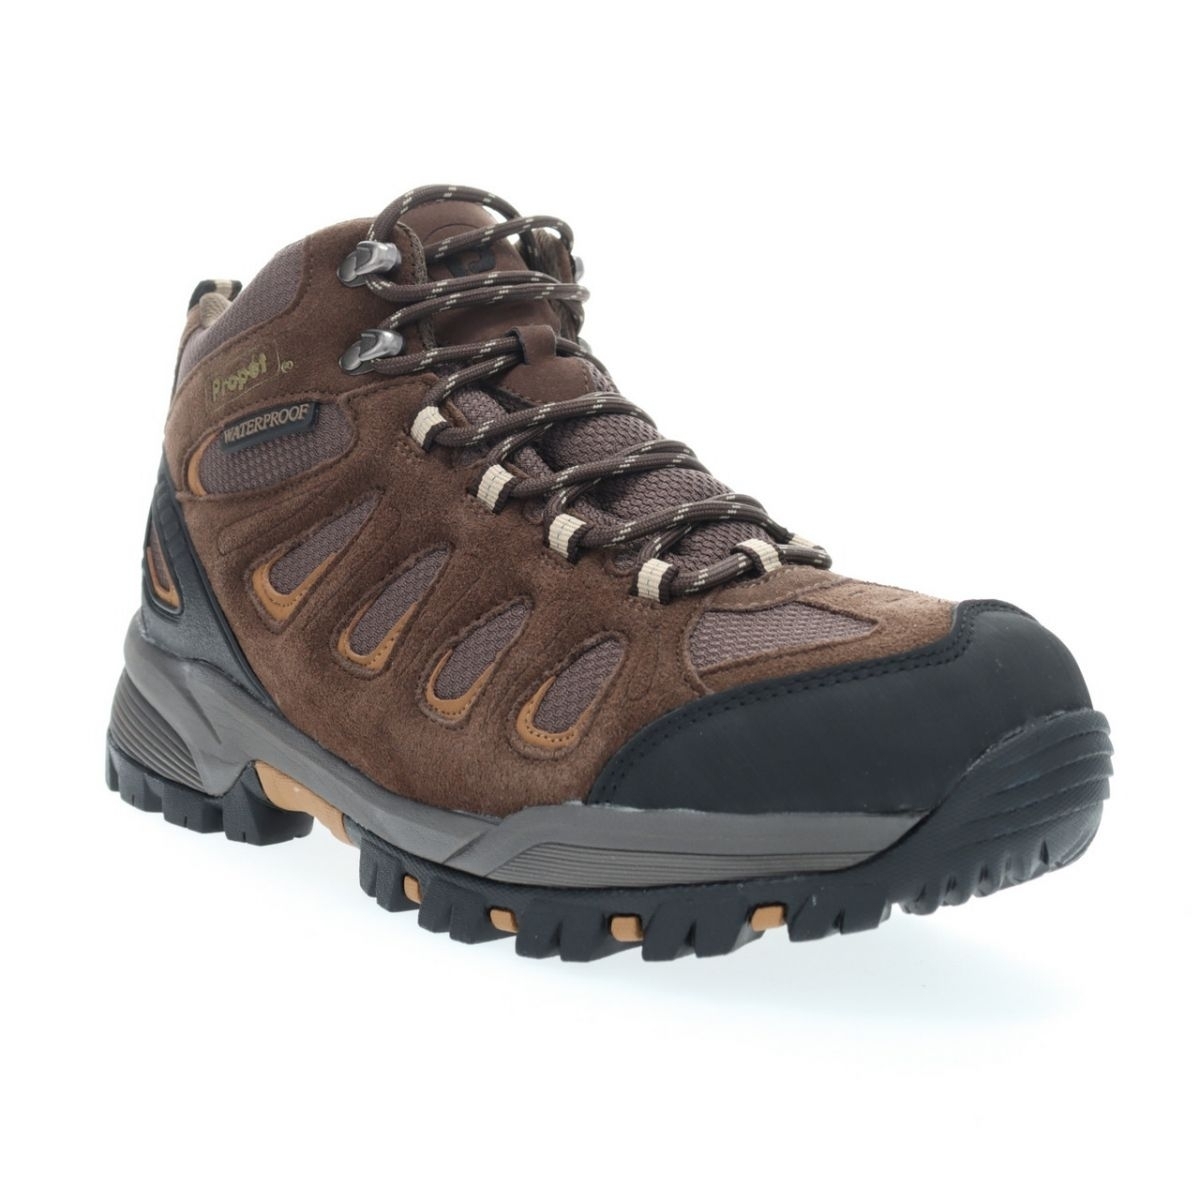 Propet Men's Ridge Walker Hiking Boot Brown - M3599BR 8 XX US Men BROWN - BROWN, 14